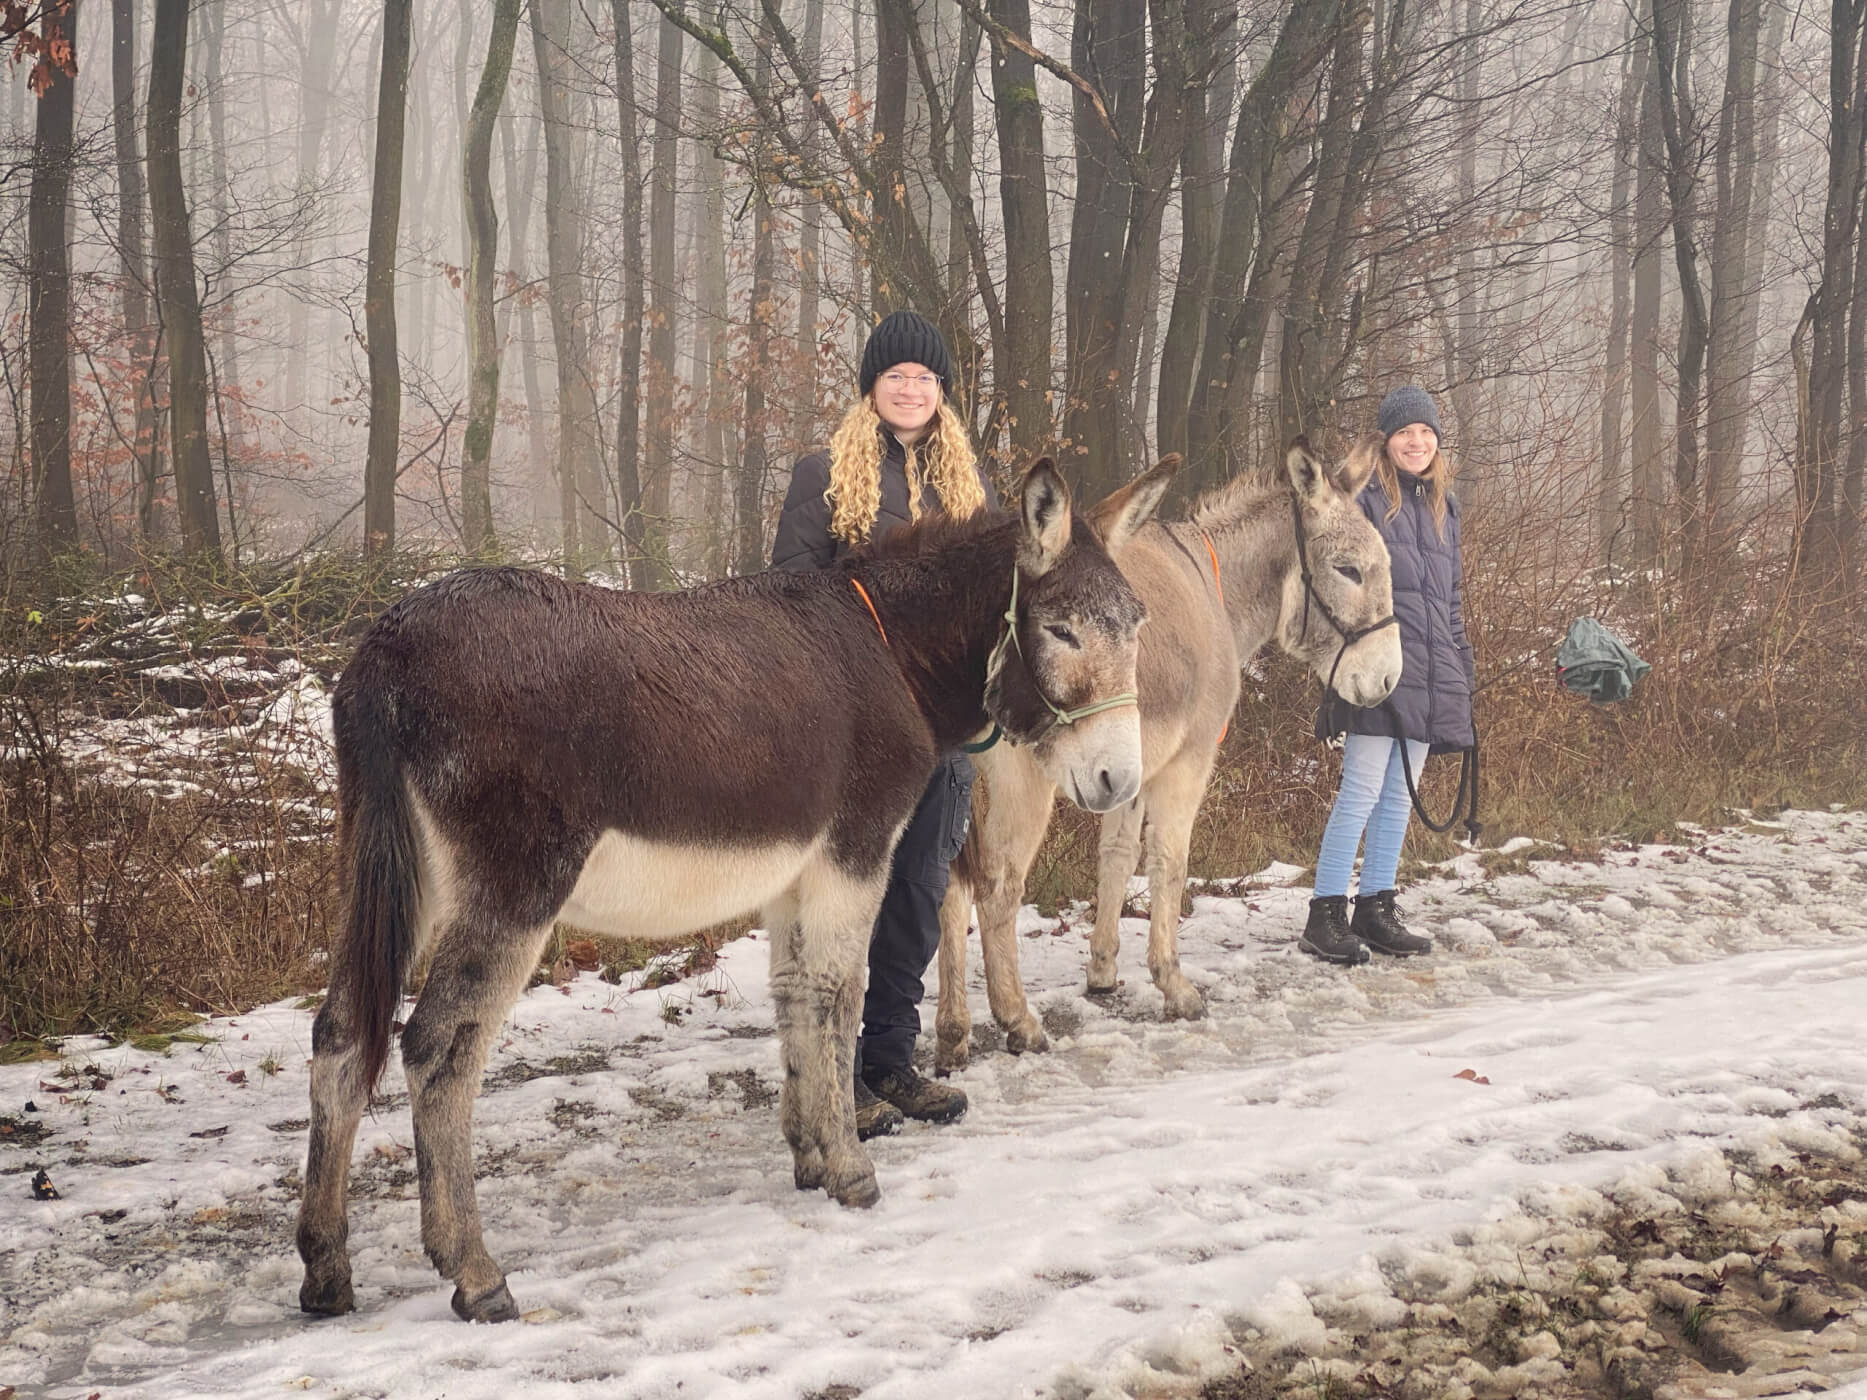 Esel-Glühwein-Wanderung im Schnee durch den winterlichen mystischen Wald